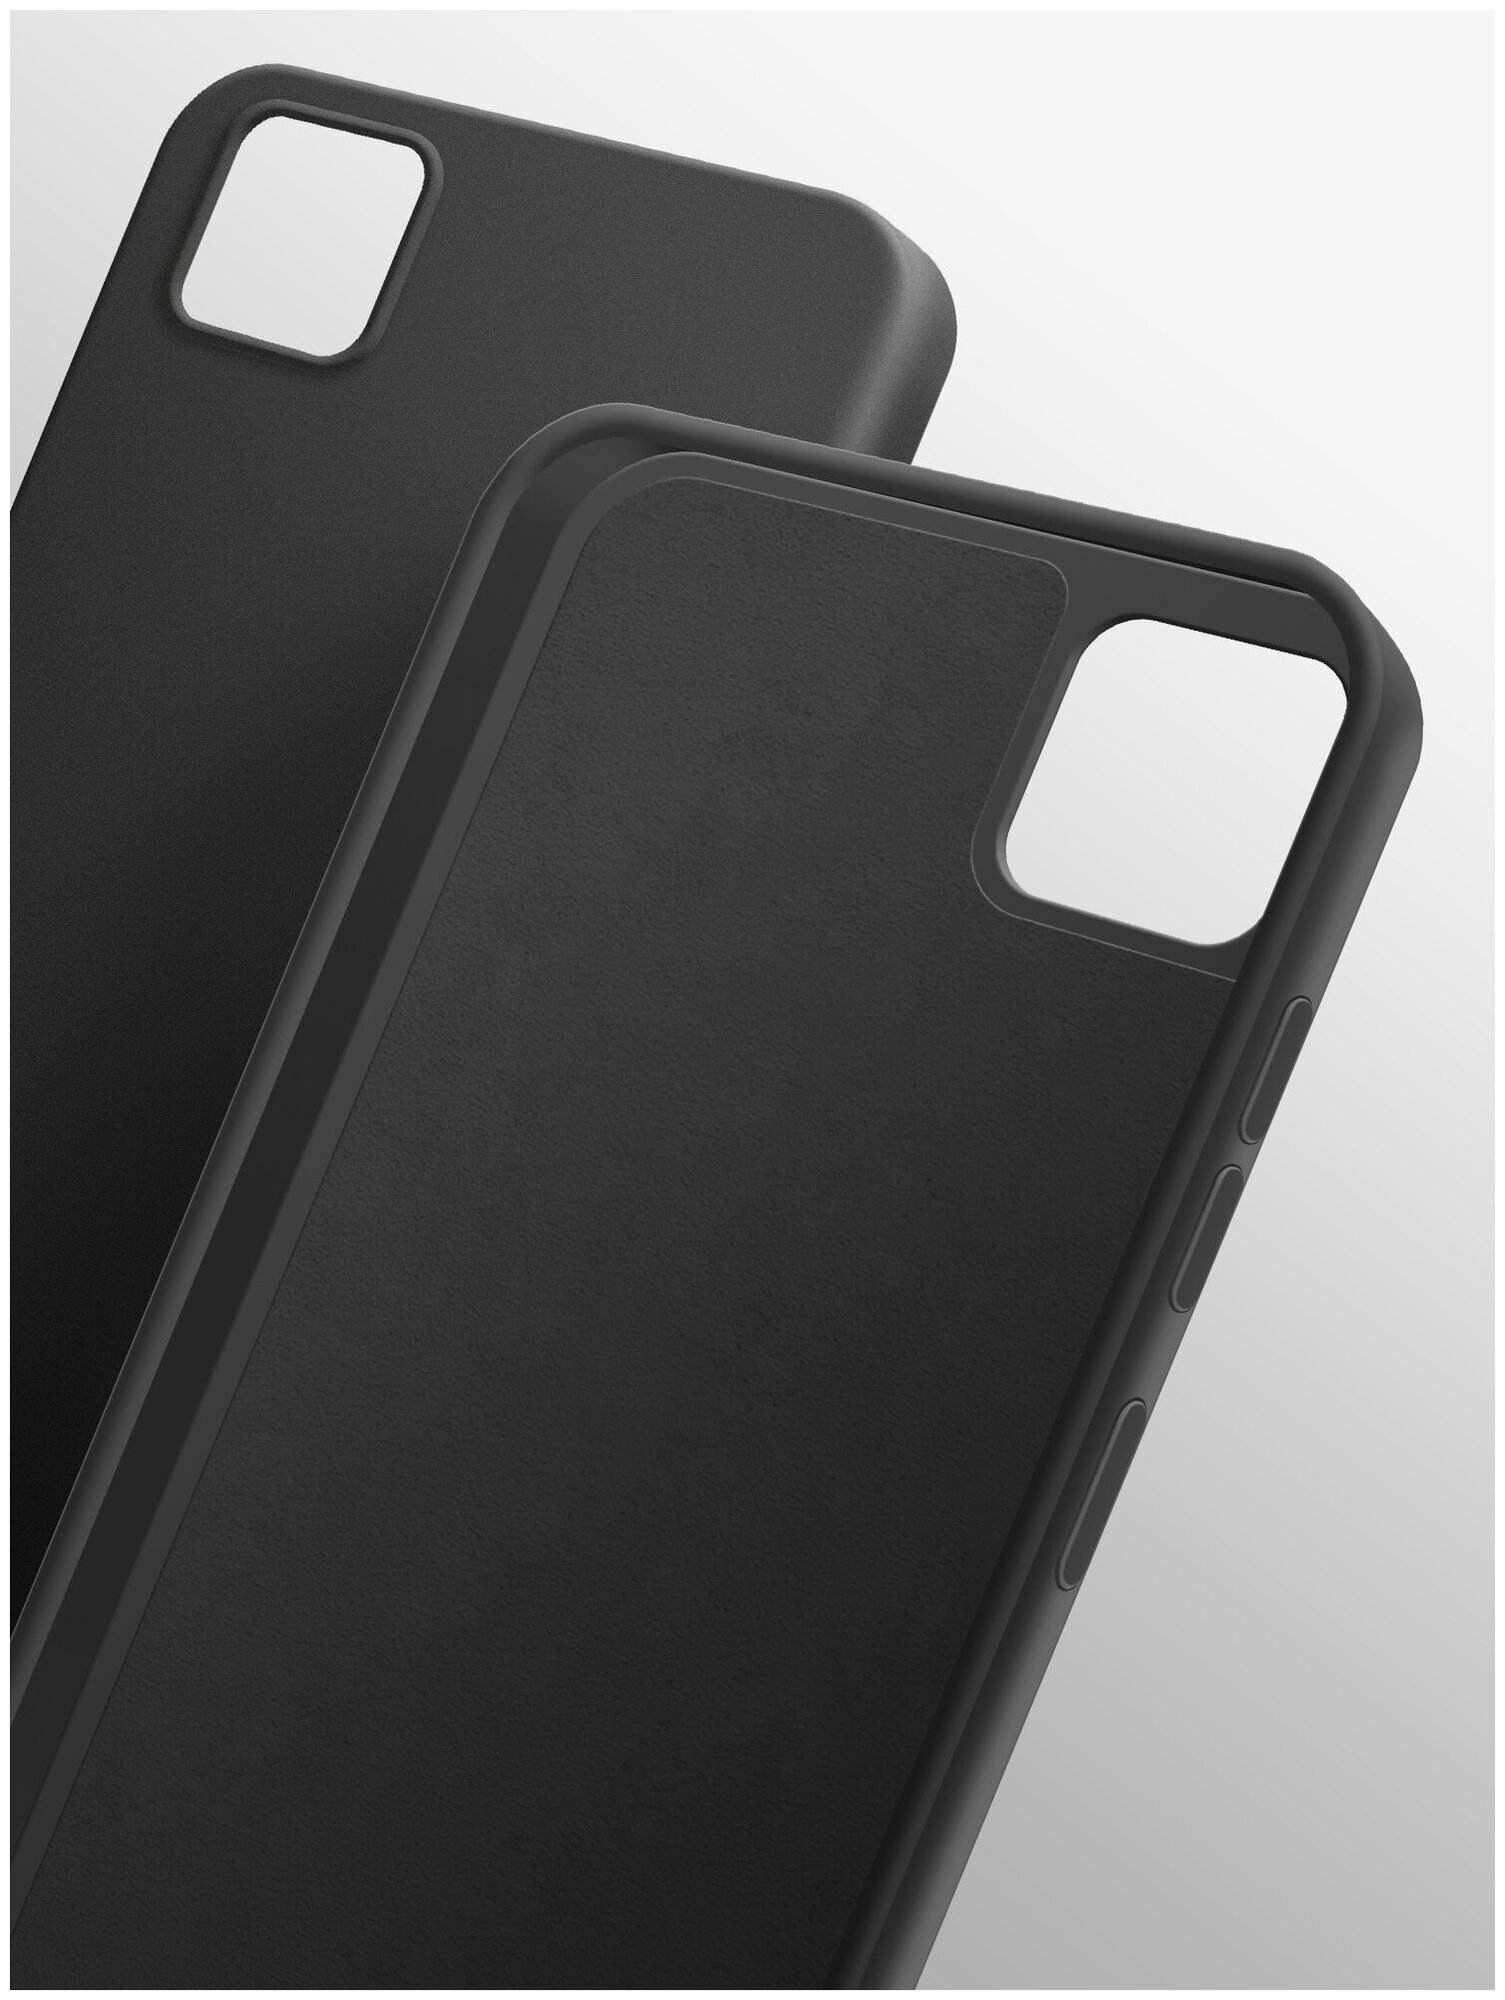 Чехол на Honor 9S/ Huawei Y5p (Хонор 9С/Хуавей У5п) силиконовый бампер накладка с защитной подкладкой микрофибра черный, Brozo